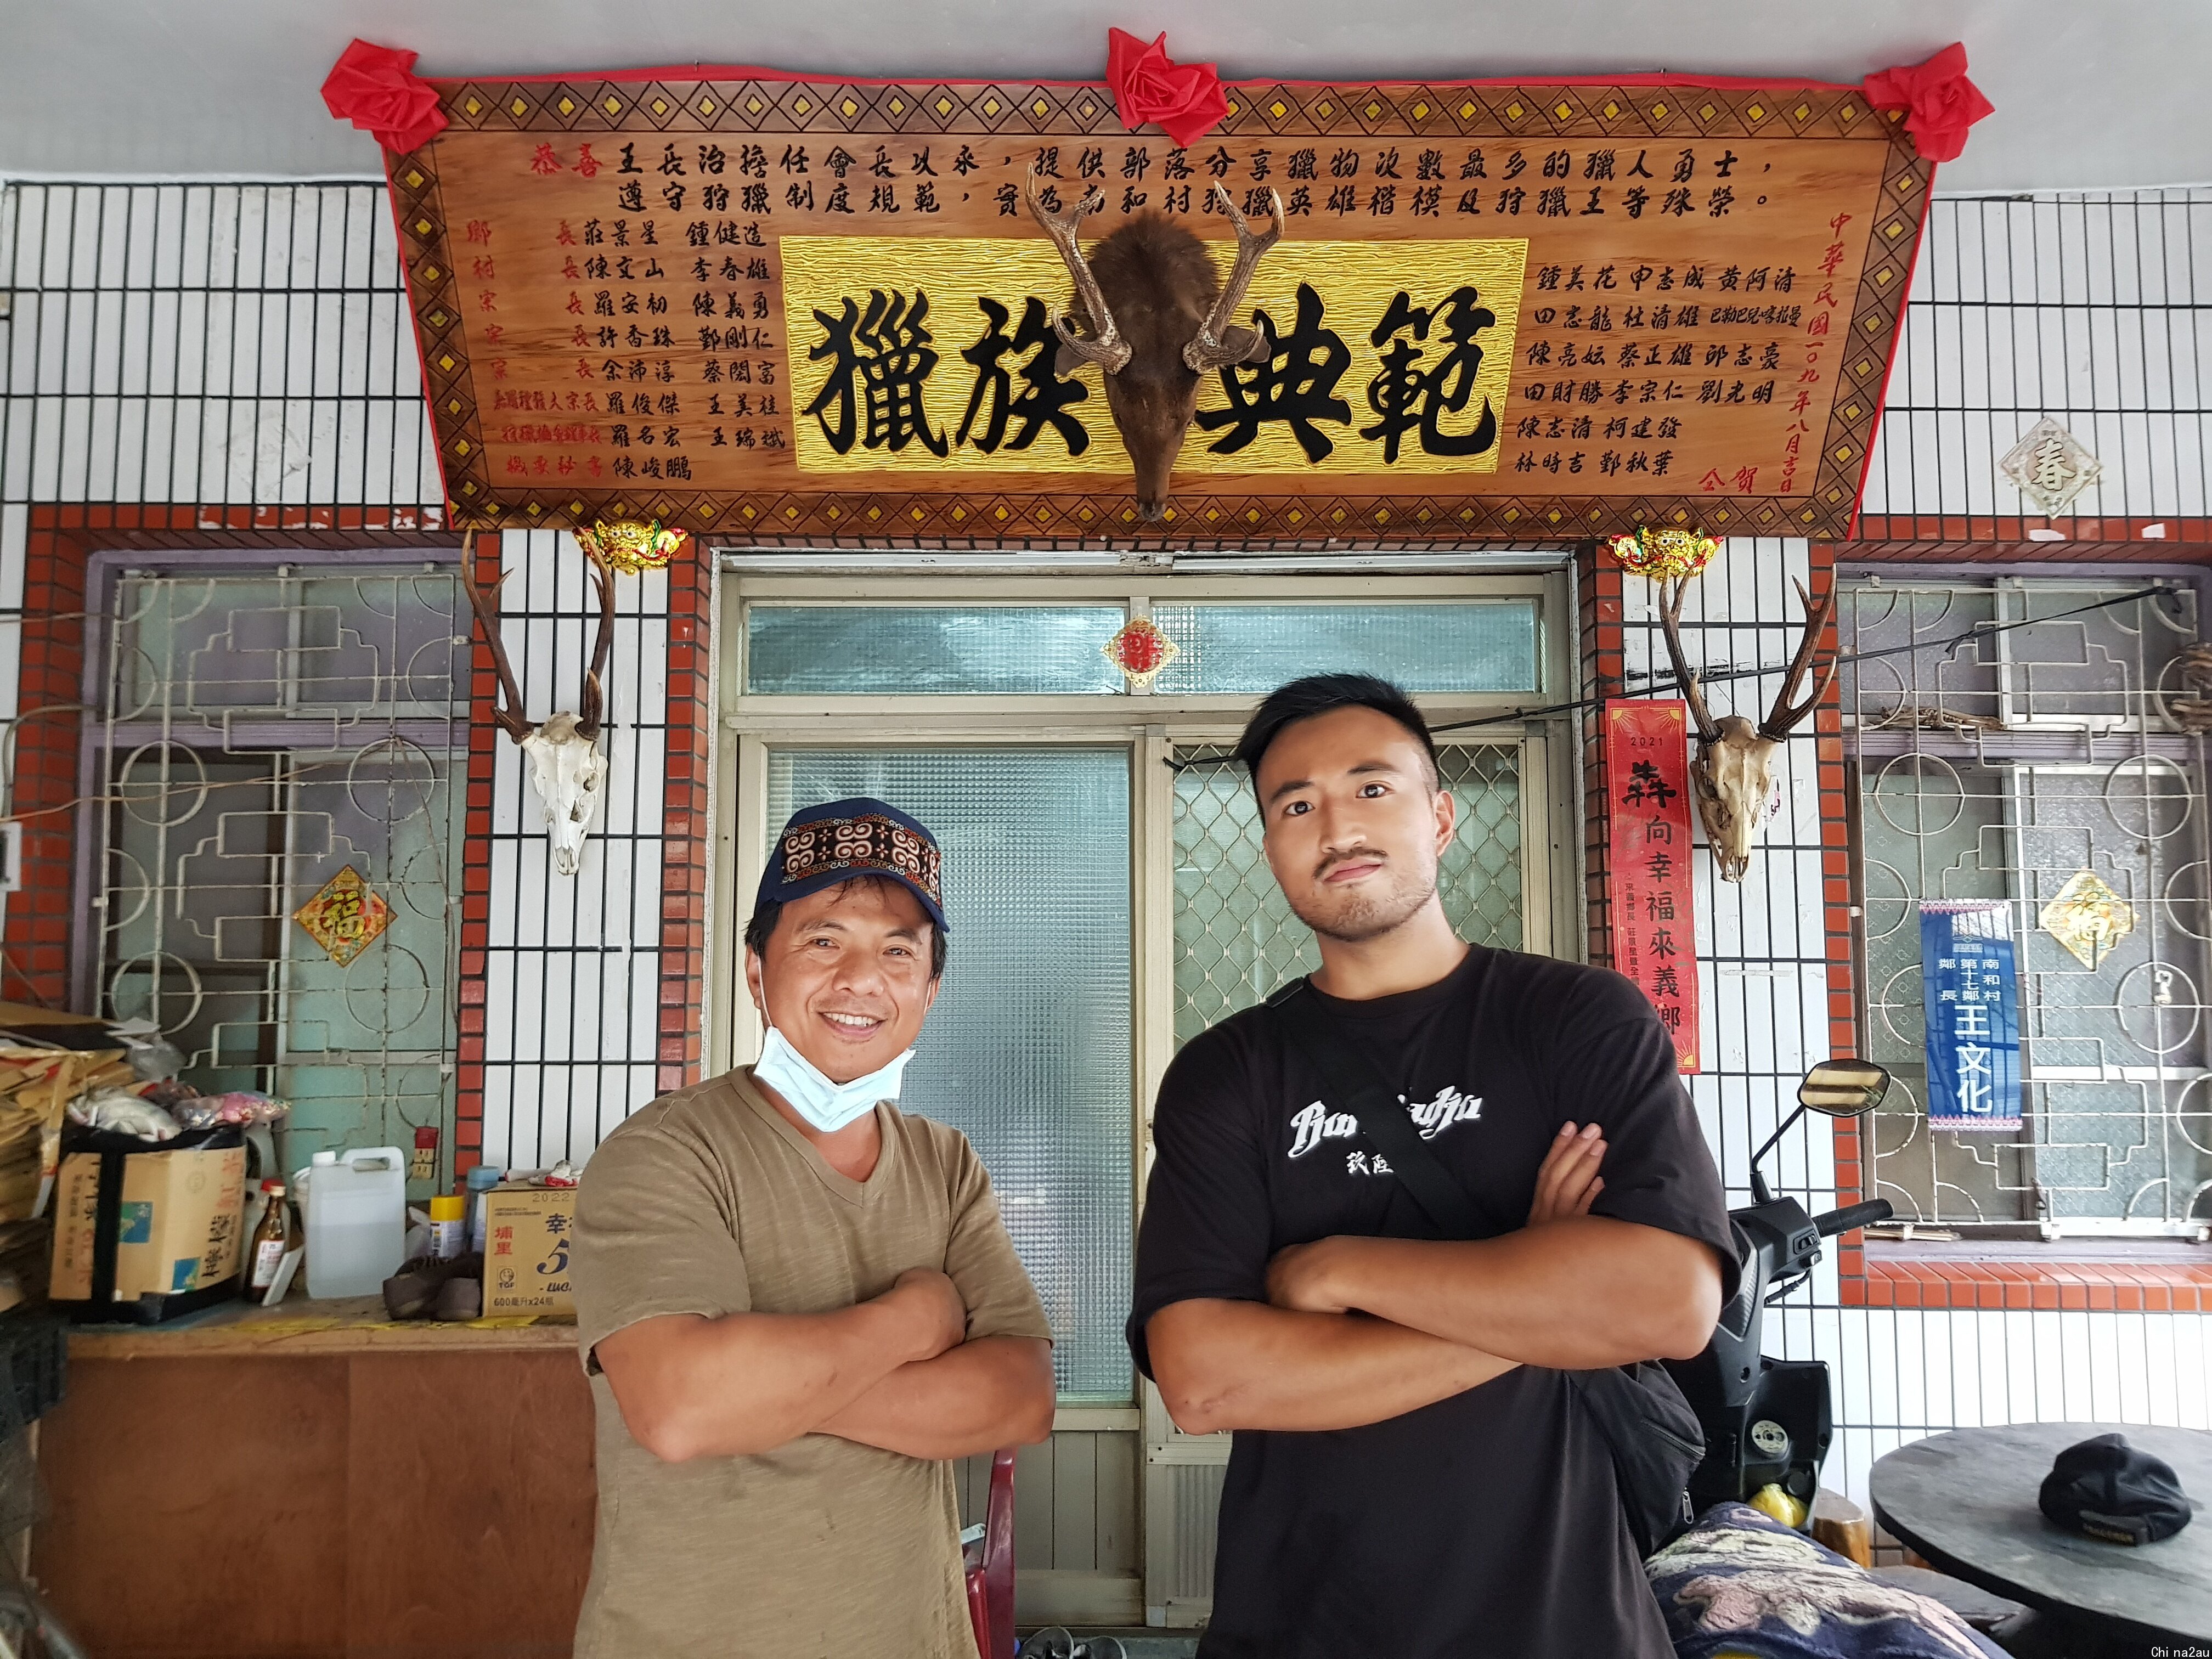 两名男子双手抱胸站在一块匾额下，匾额上用繁体中文书写“猎族典范”